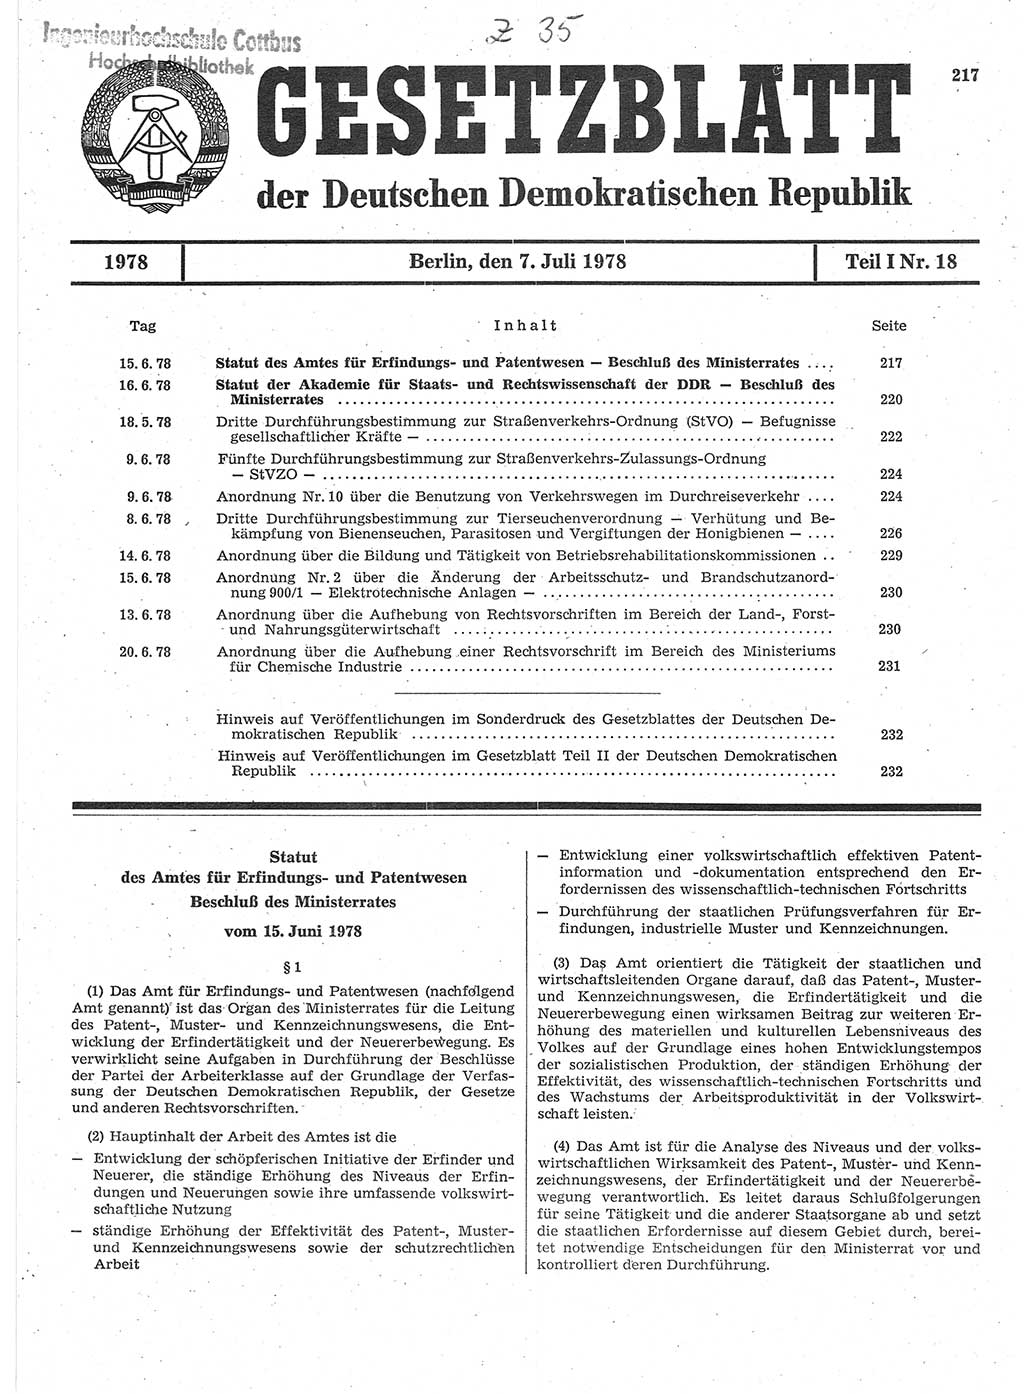 Gesetzblatt (GBl.) der Deutschen Demokratischen Republik (DDR) Teil Ⅰ 1978, Seite 217 (GBl. DDR Ⅰ 1978, S. 217)